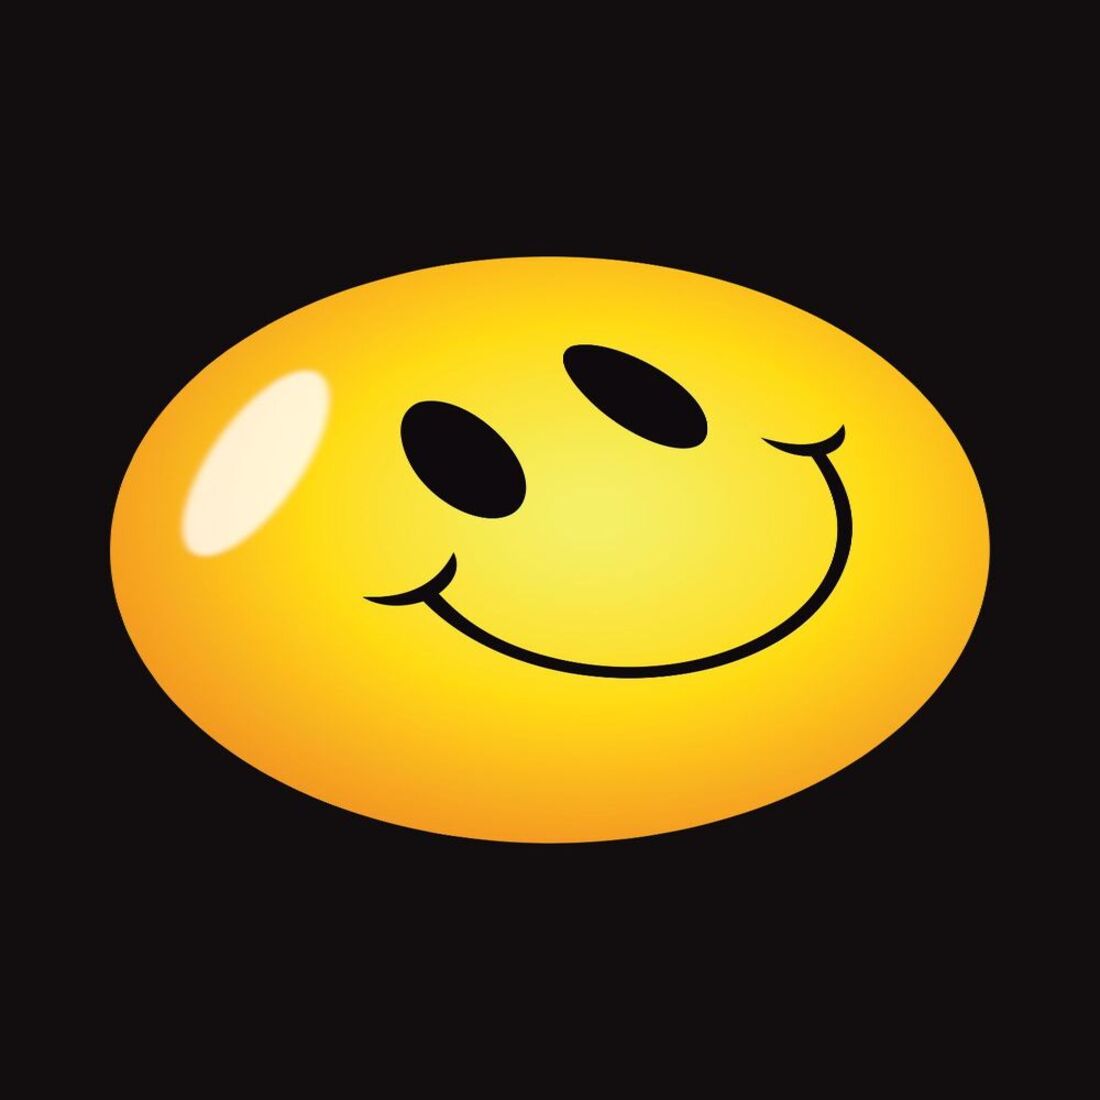 Smily Emoji cover image.